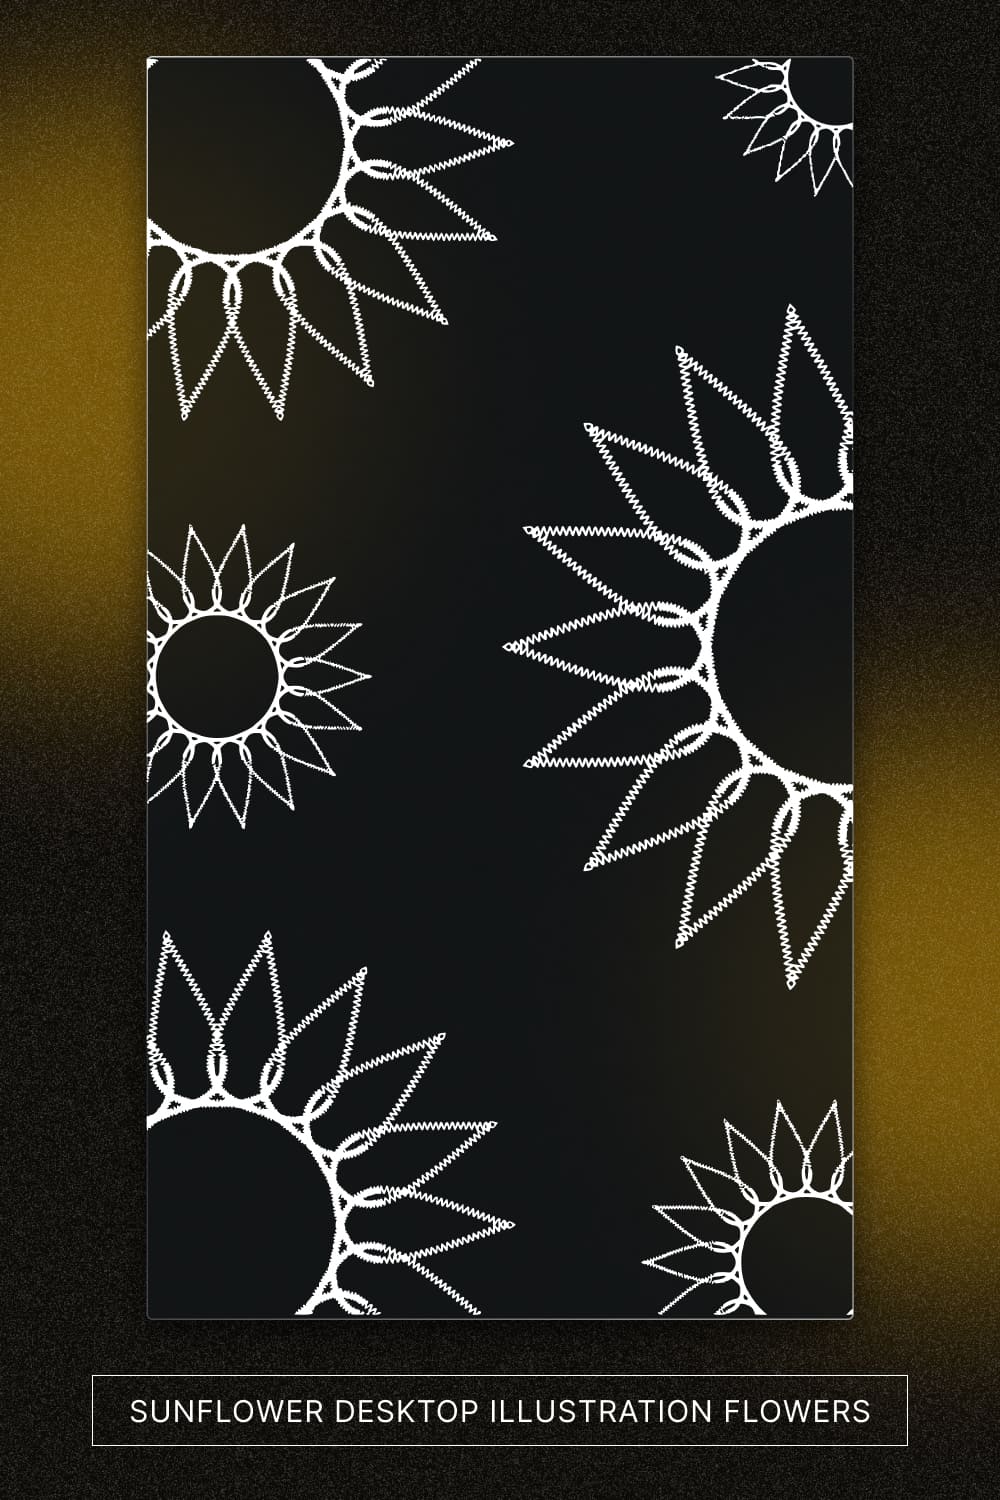 sunflower desktop illustration flowers pinterest image.